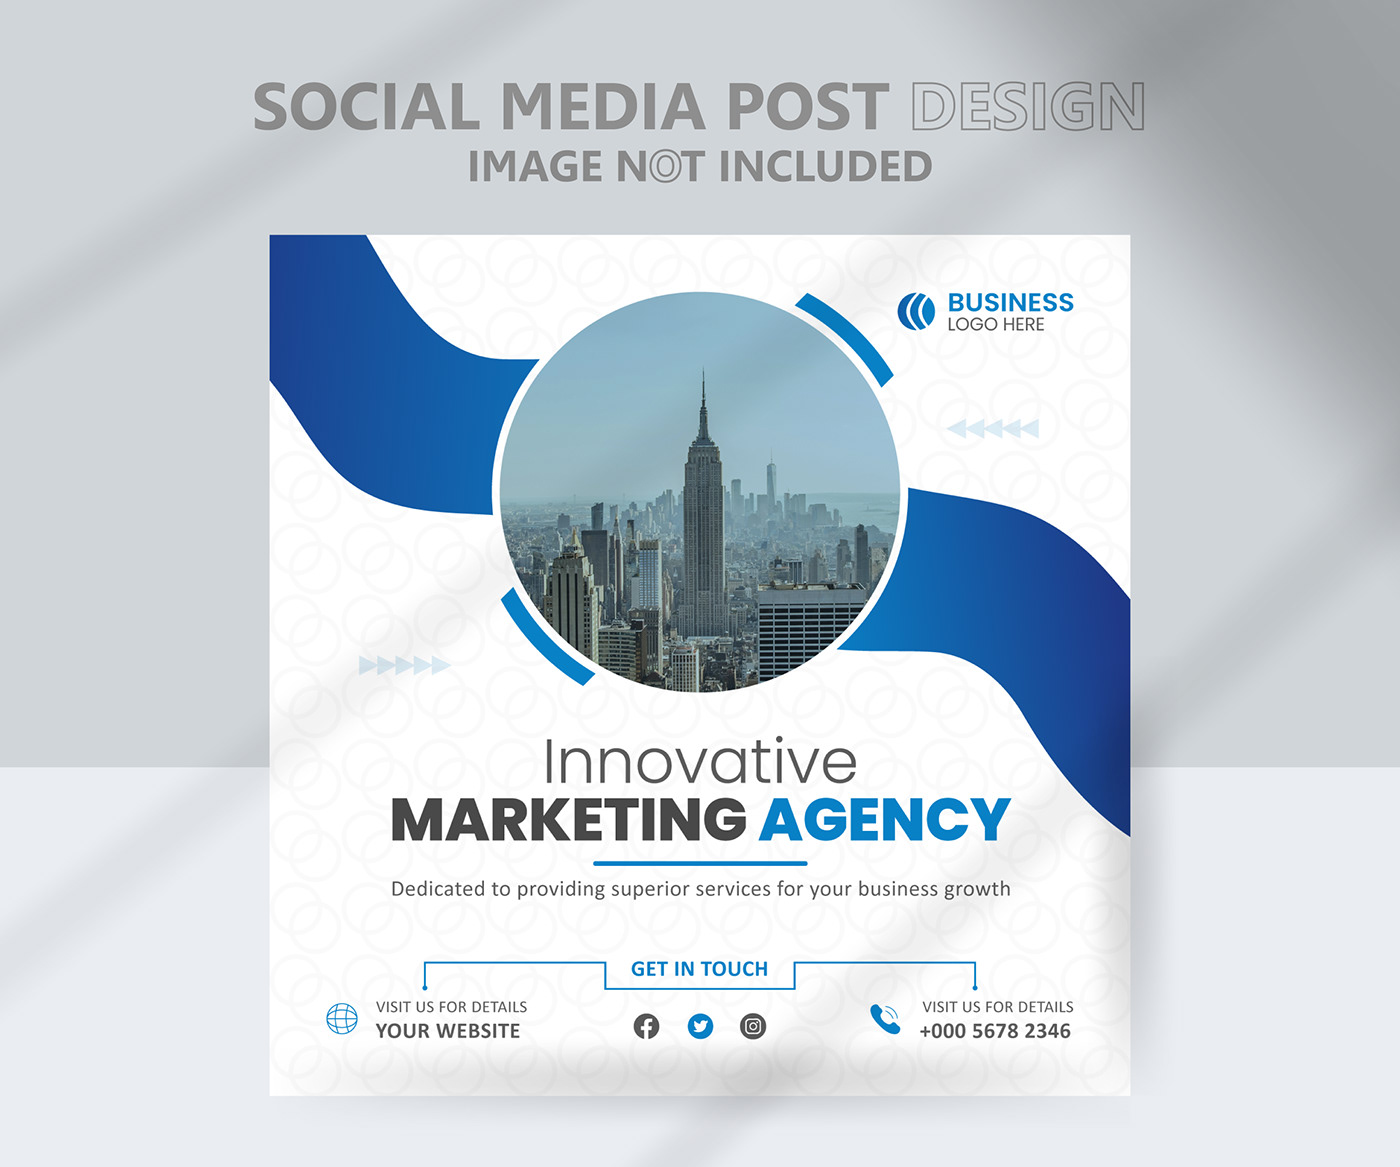 Social media marketing design